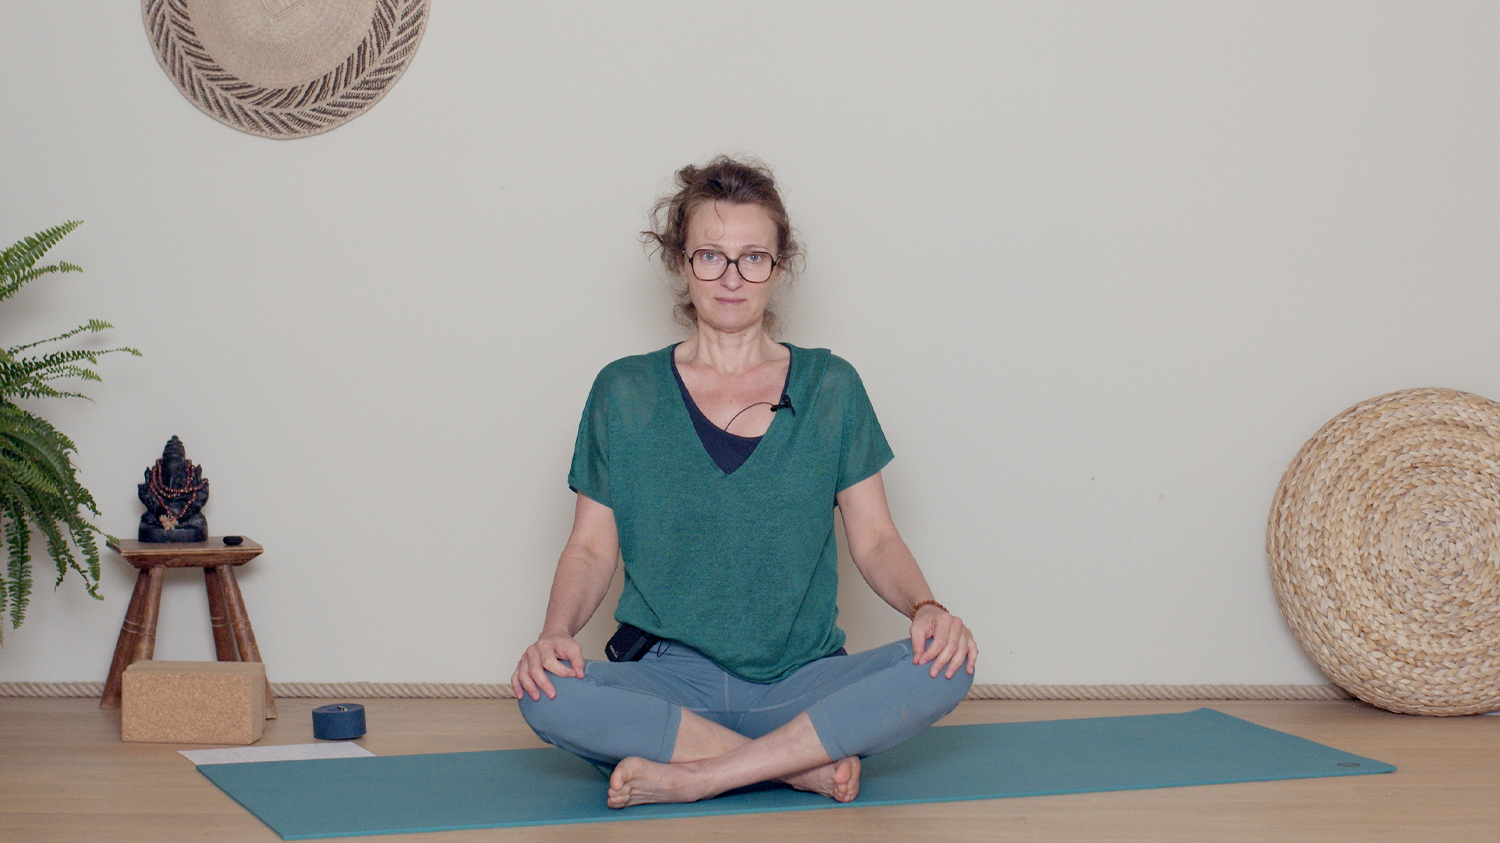 Spécial canicule : relaxation et pranayama | Cours de yoga en ligne avec Delphine Denis | Hatha Yoga doux, Pranayama